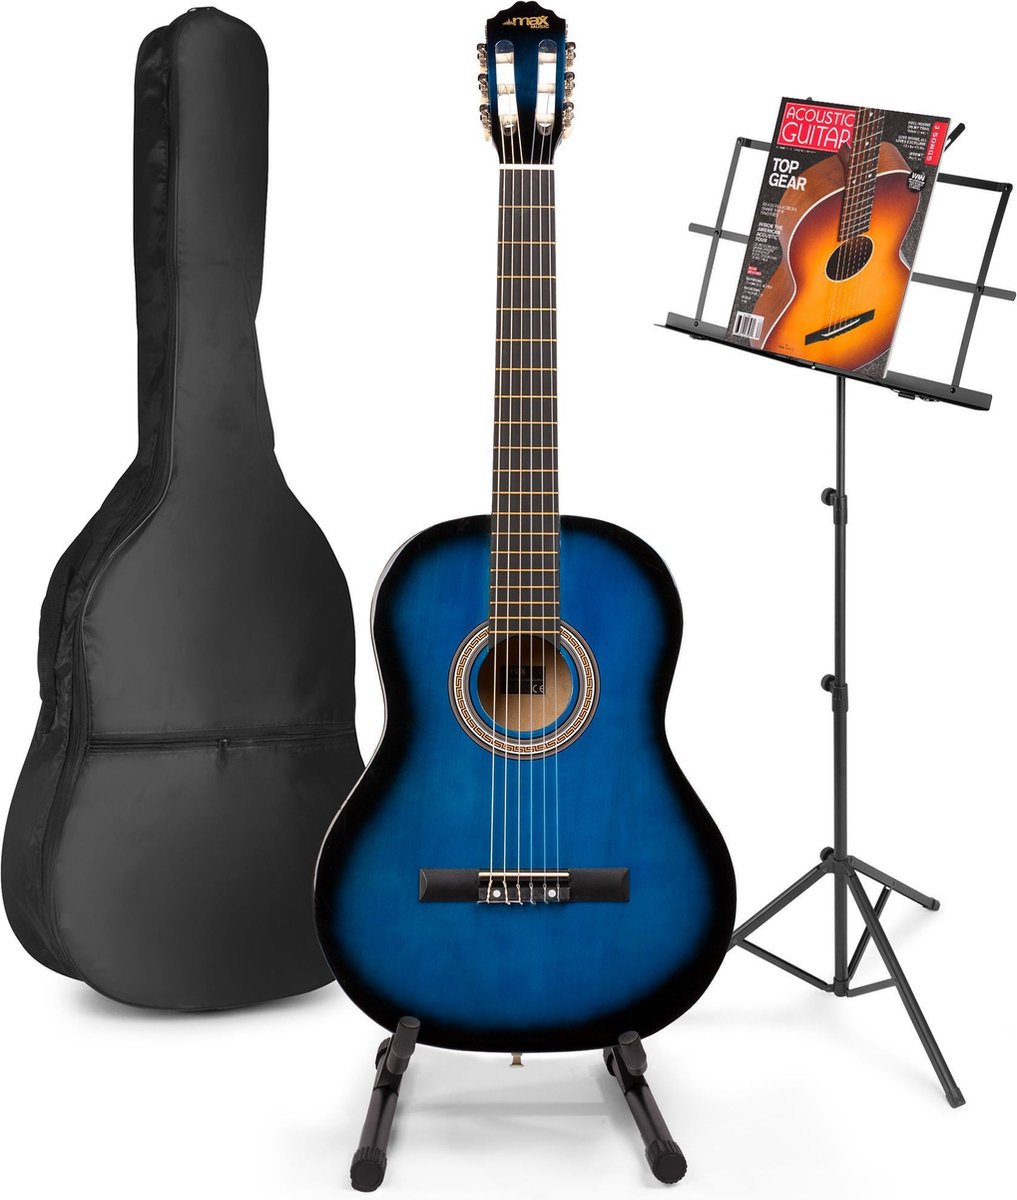 Akoestische gitaar voor beginners - MAX SoloArt klassieke gitaar / Spaanse gitaar met o.a. 39'' gitaar, gitaar standaard, muziekstandaard, gitaartas, gitaar stemapparaat en extra accessoires - Blauw